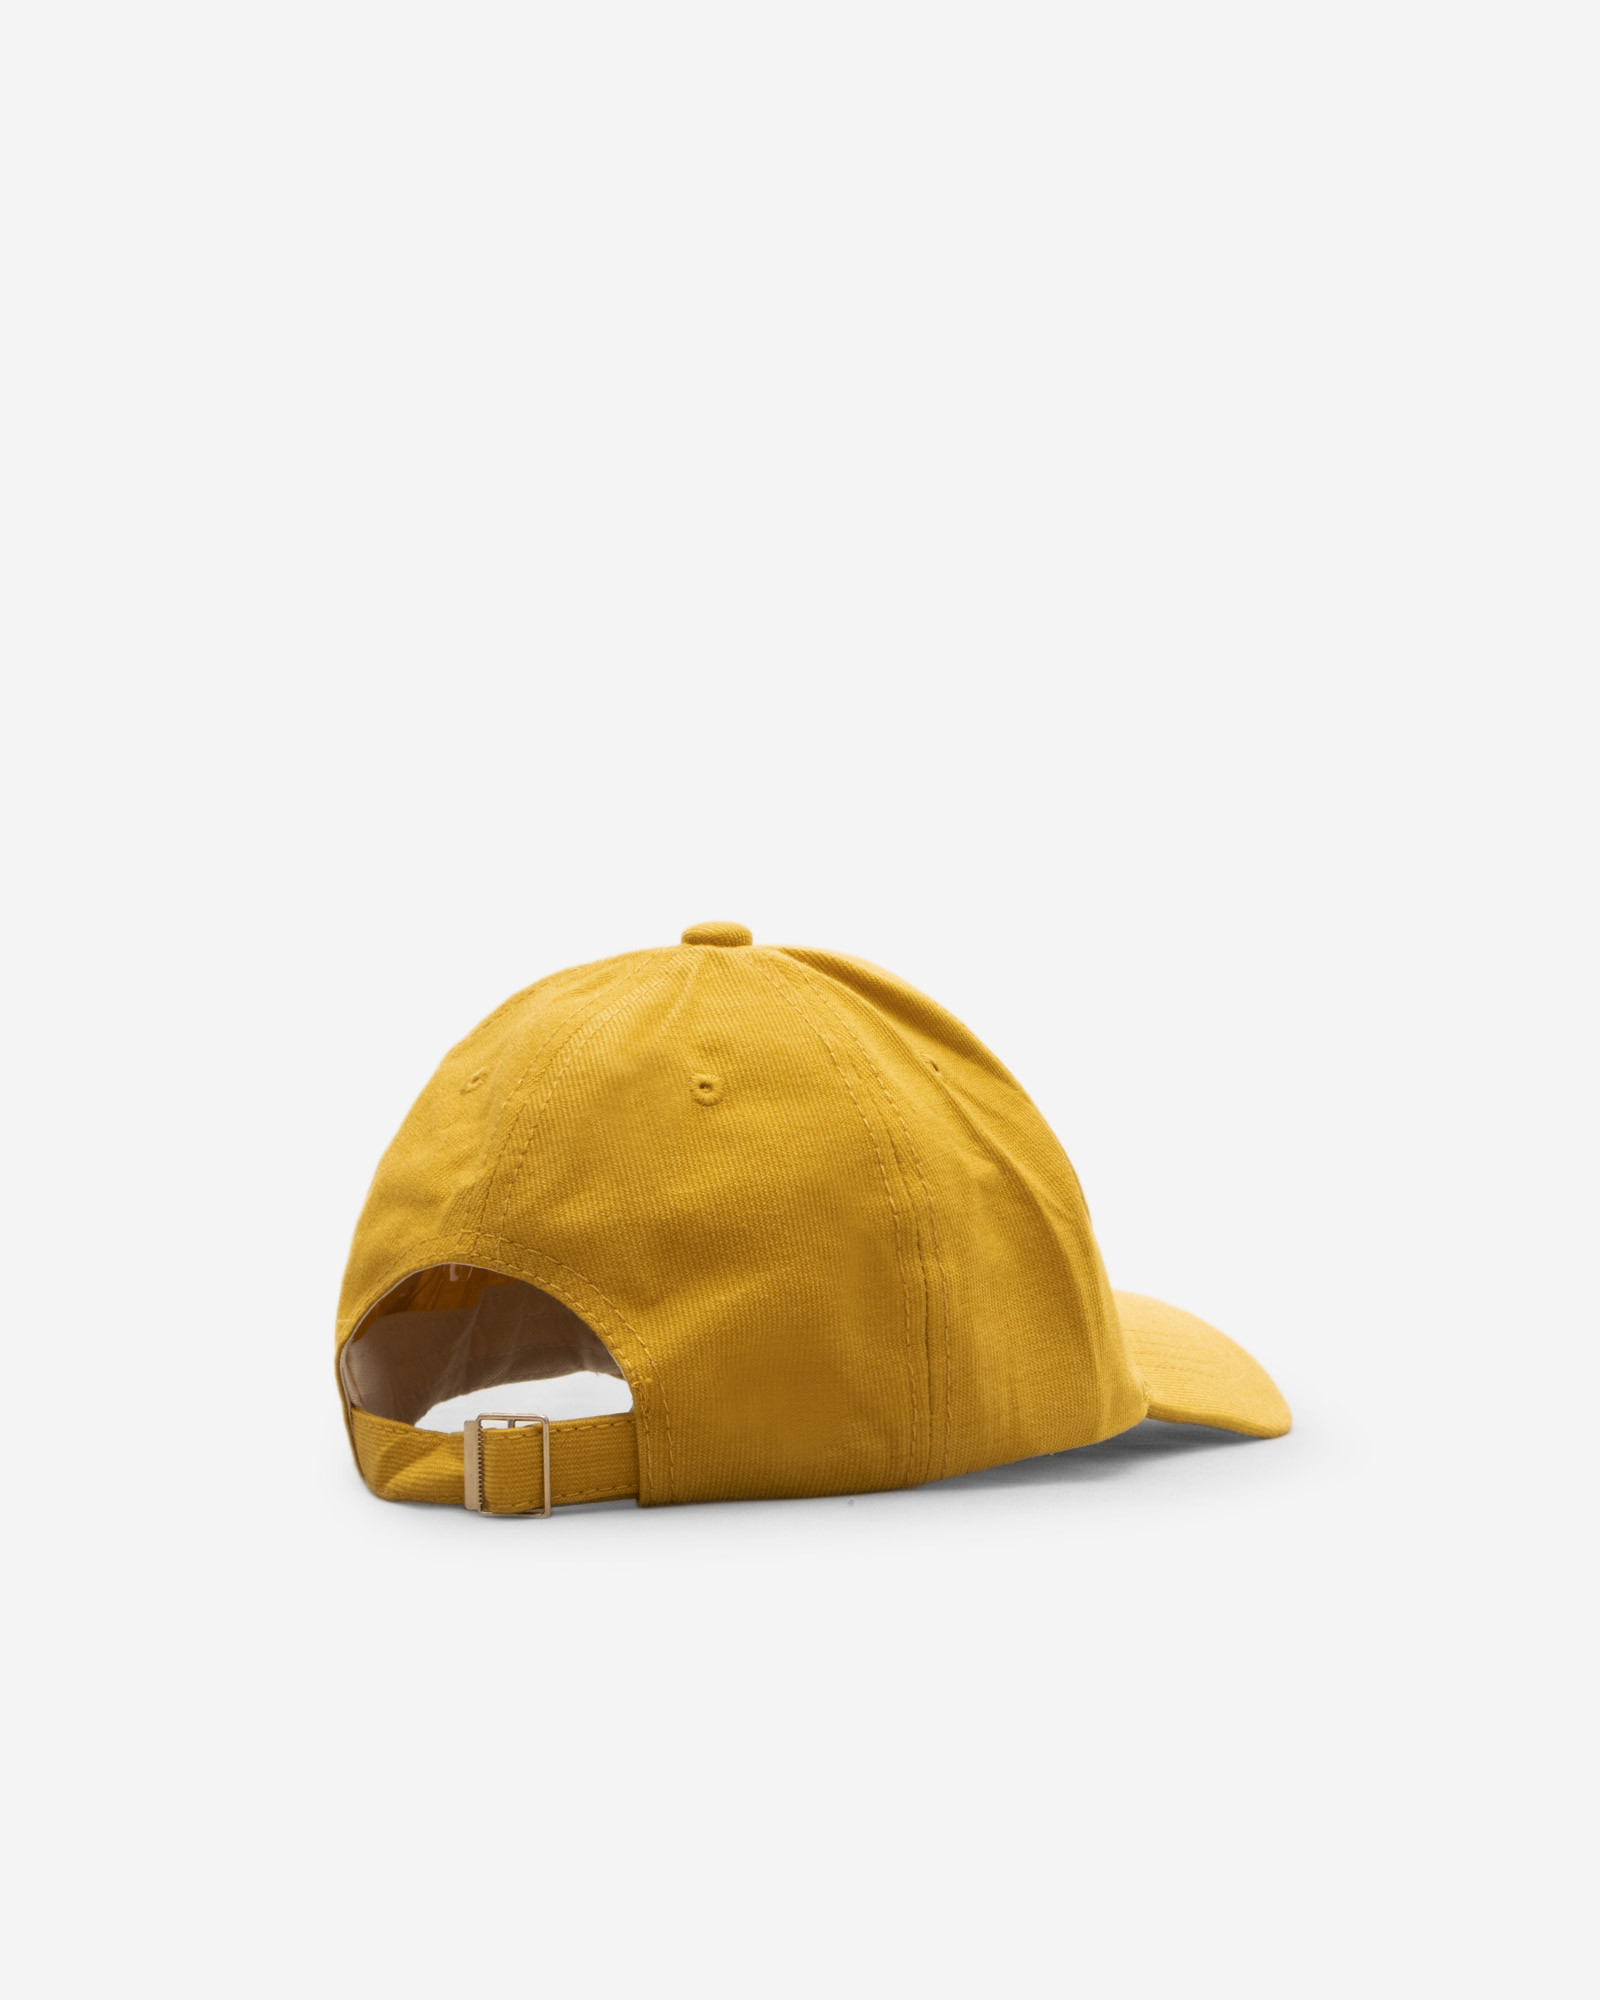 کلاه نقاب دار مردانه زرد 22439366